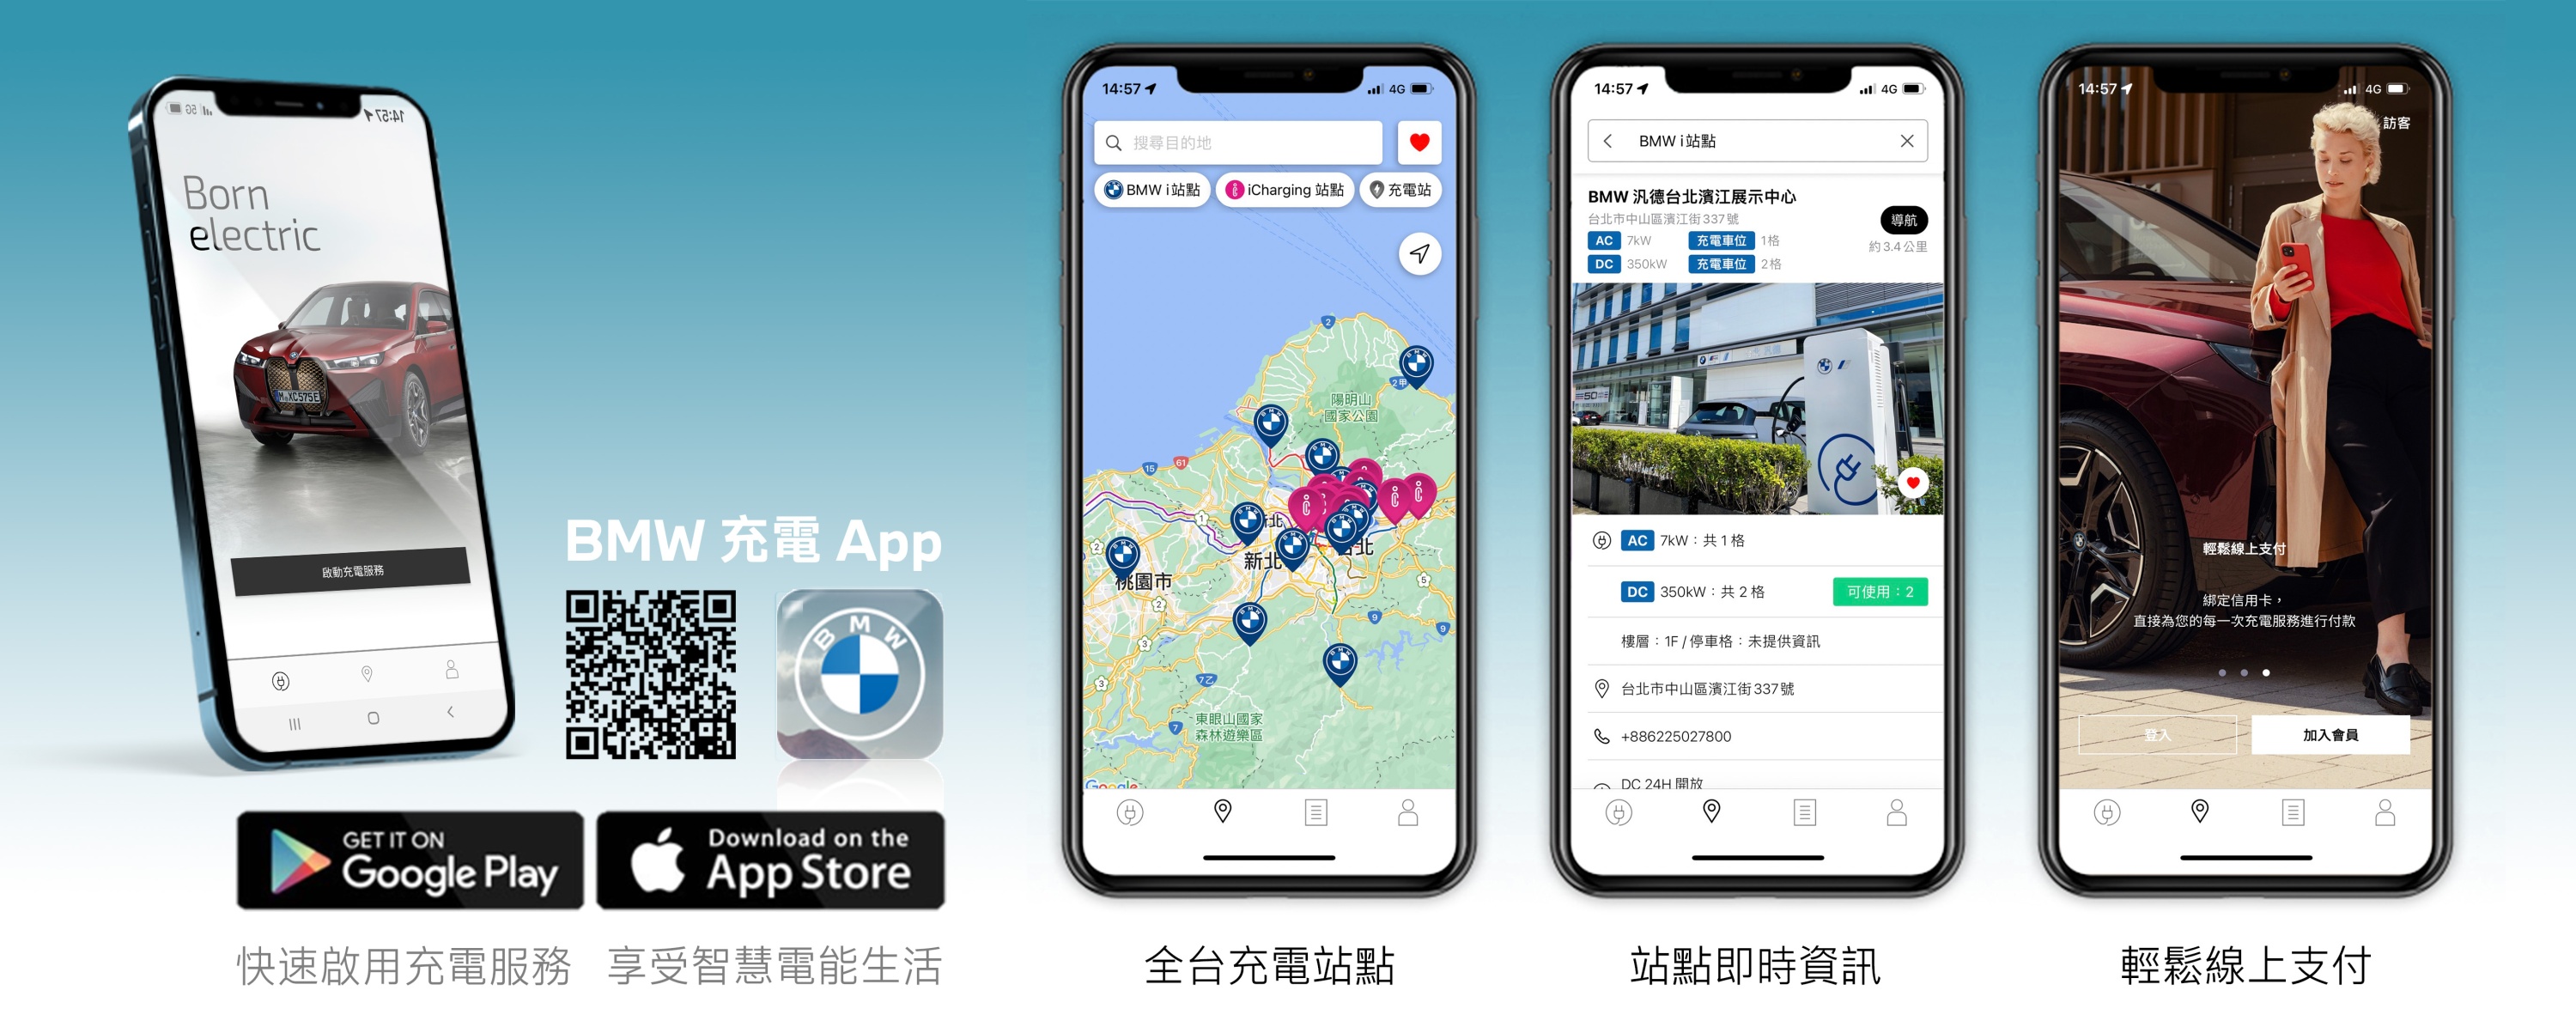 [新聞照片四] BMW總代理汎德不僅推出專屬台灣市場的「BMW充電App」智慧服務，更於今年全面更新2.0版本，新增多項滿足車主電能生活需求的貼心服務，例如更豐富完備的站點資訊、即.jpg